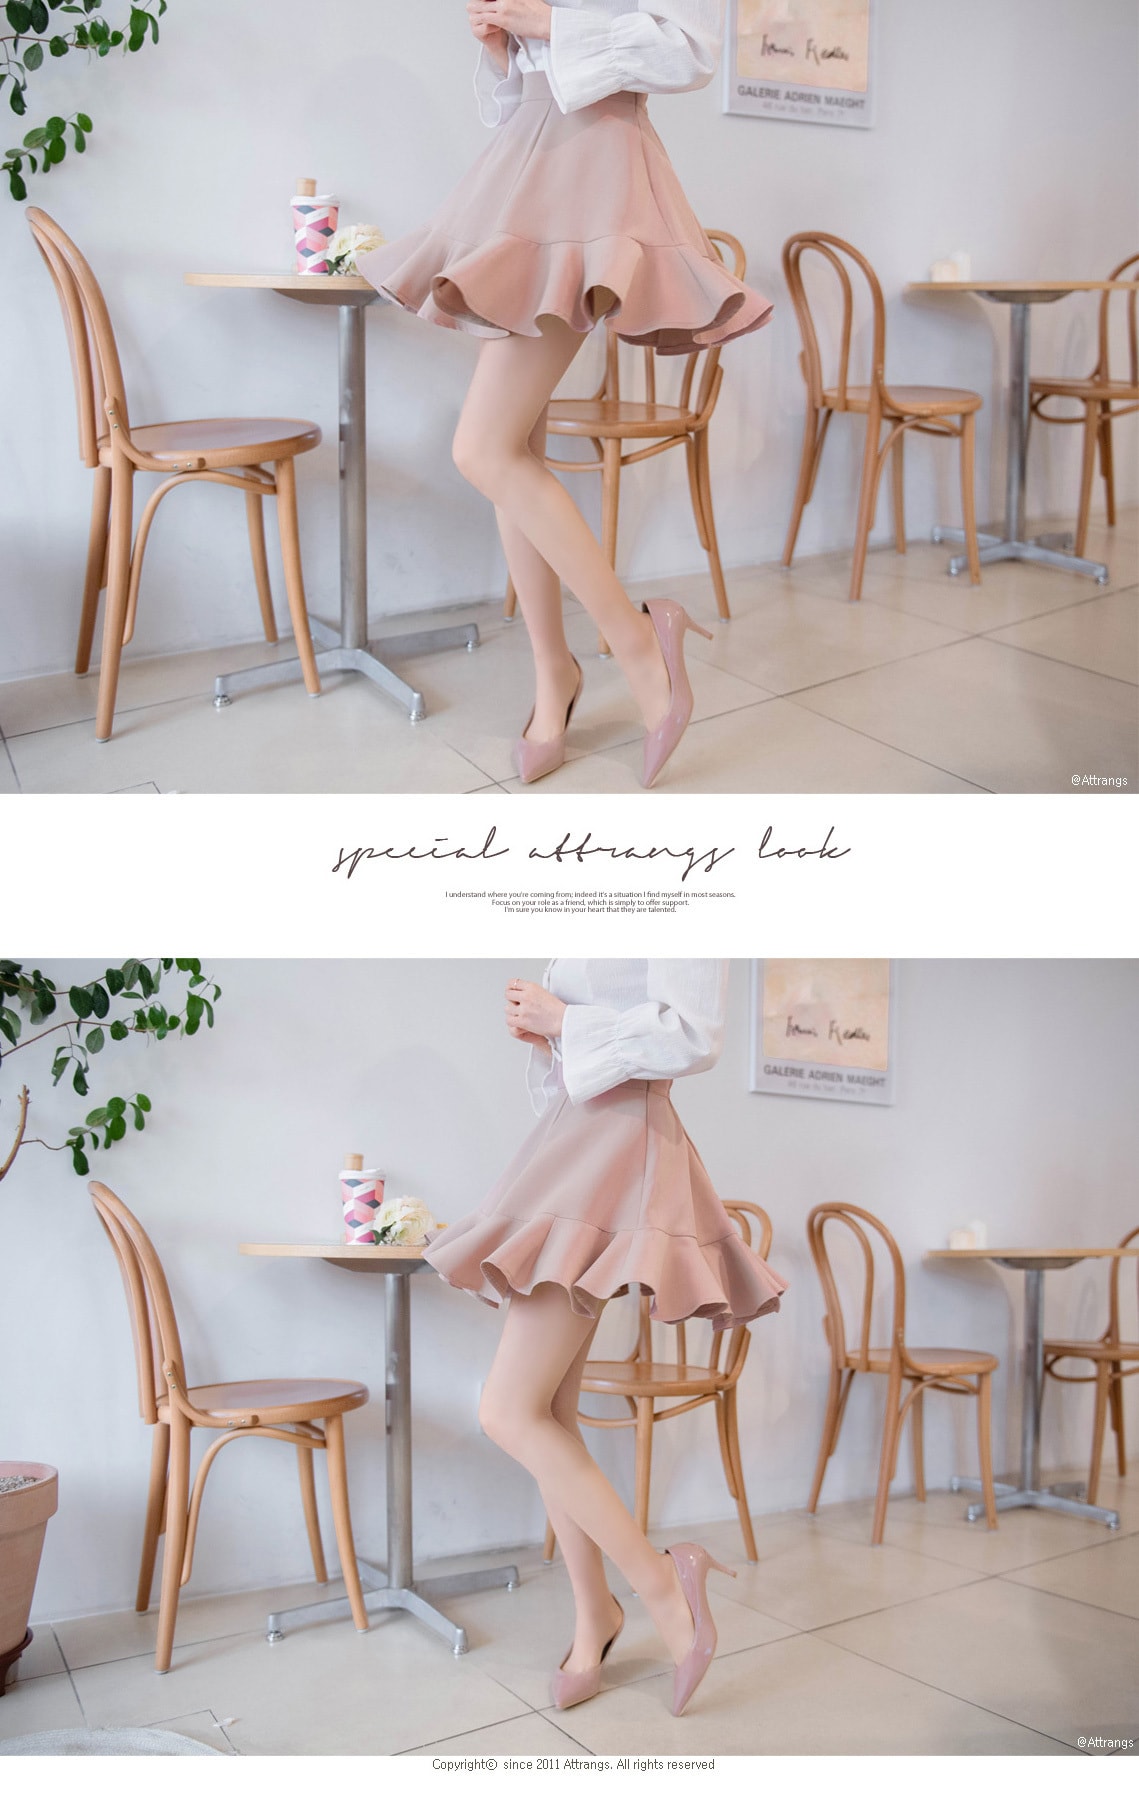 【韩国直邮】ATTRANGS 高腰A字版短裙 粉色 均码